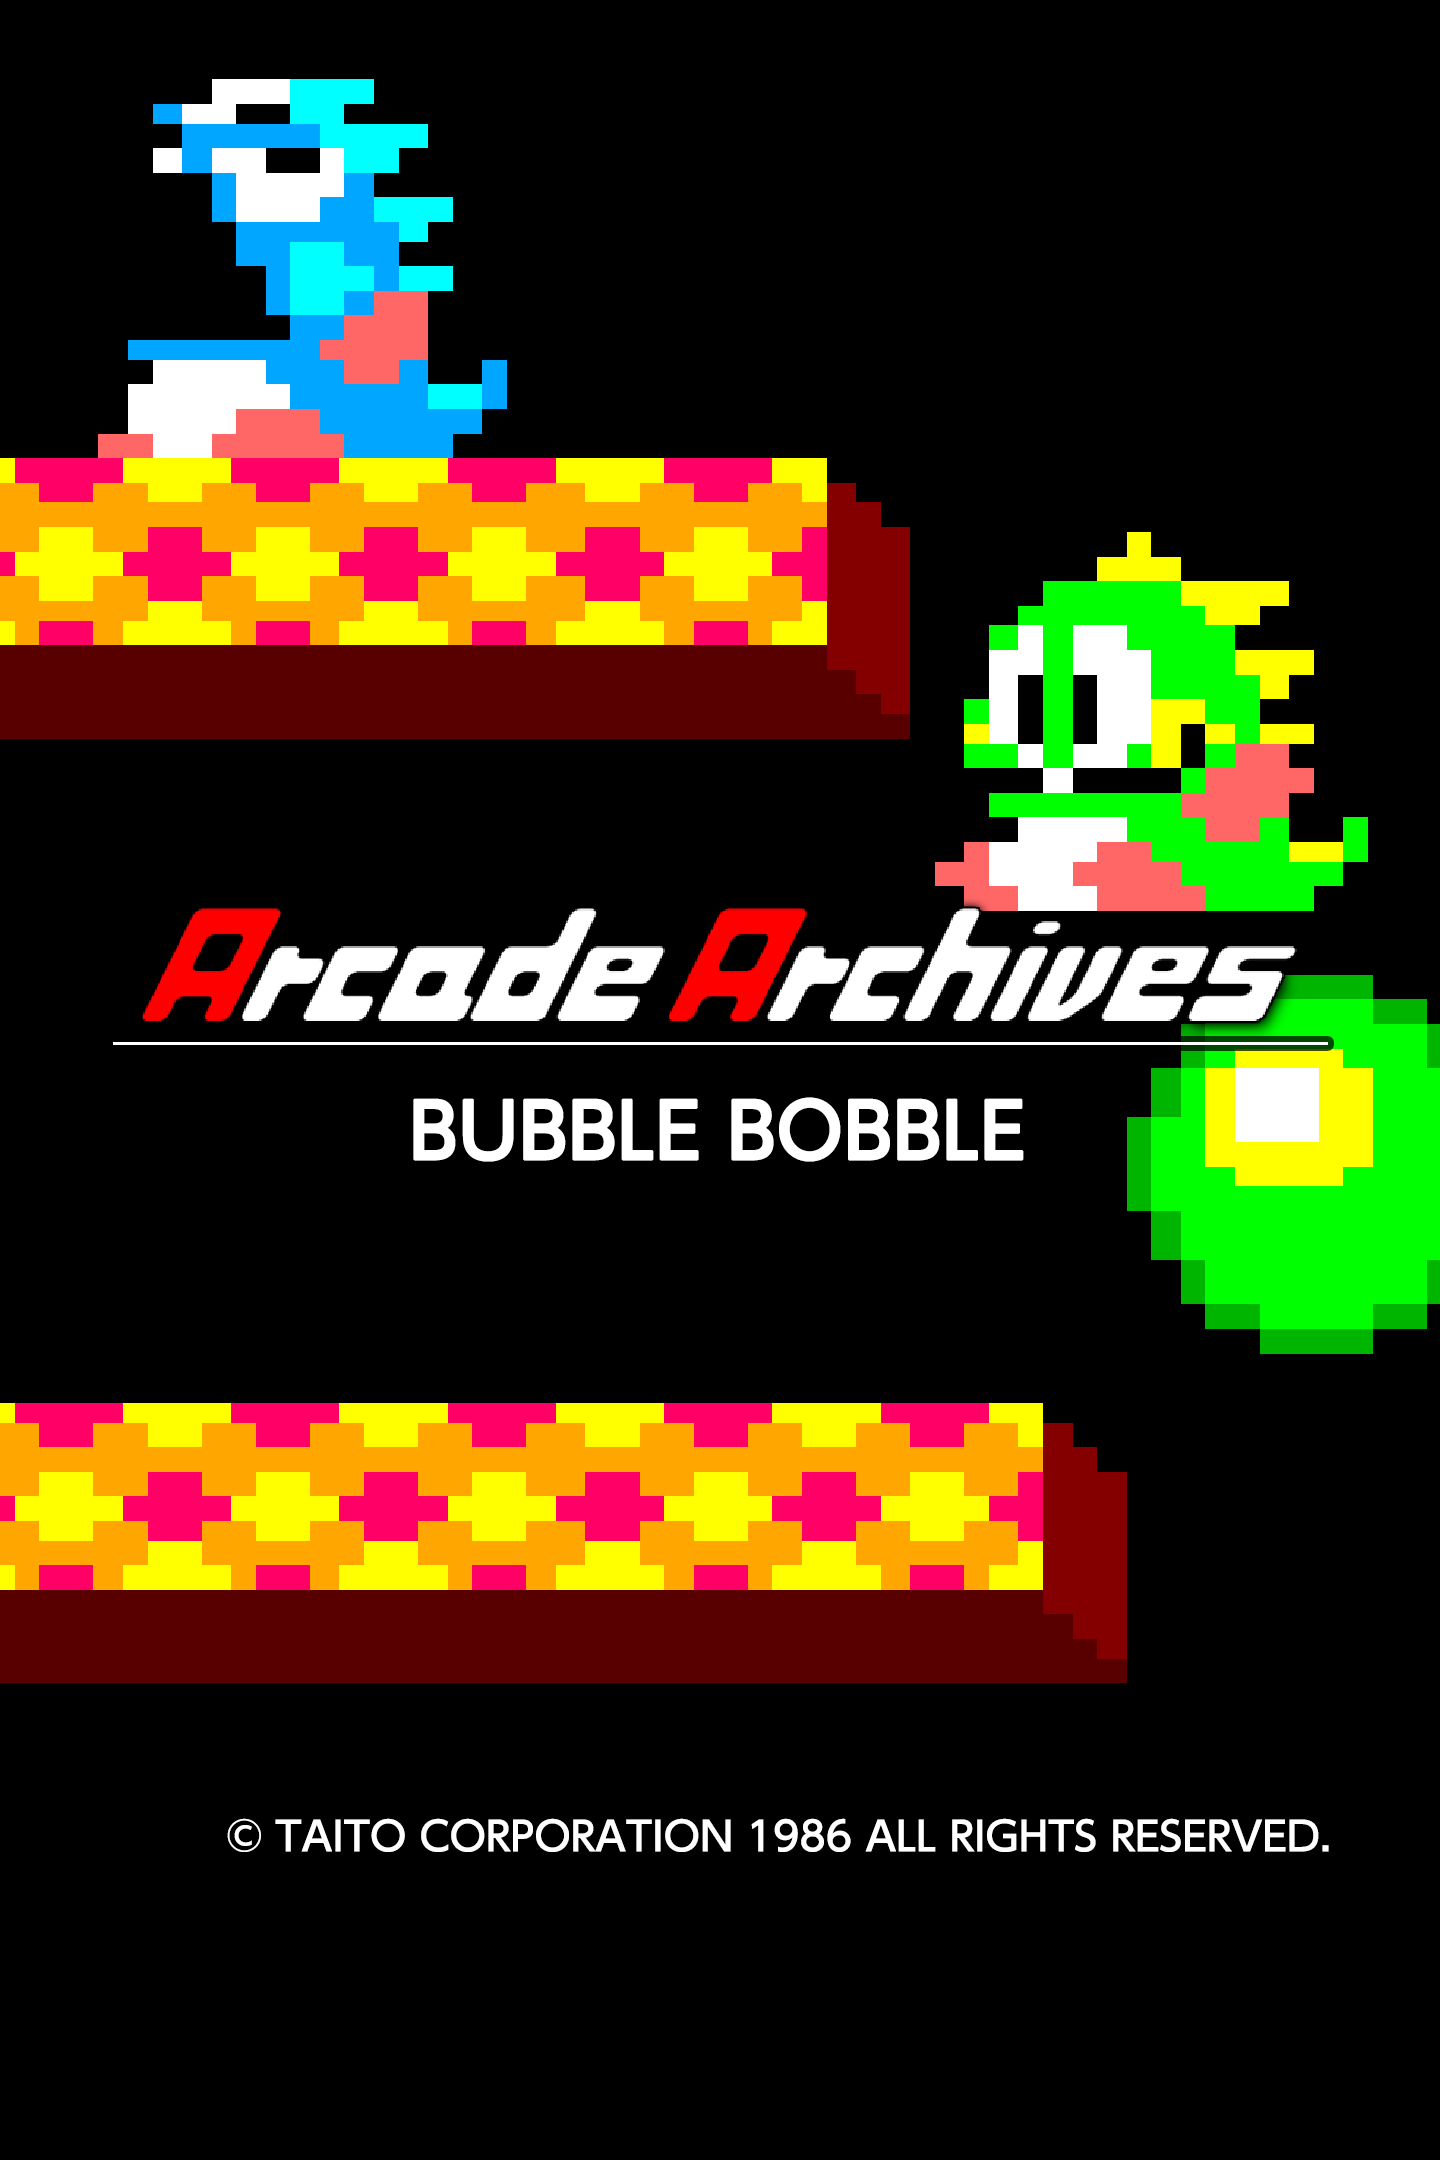 Arcade Archives BUBBLE BOBBLE